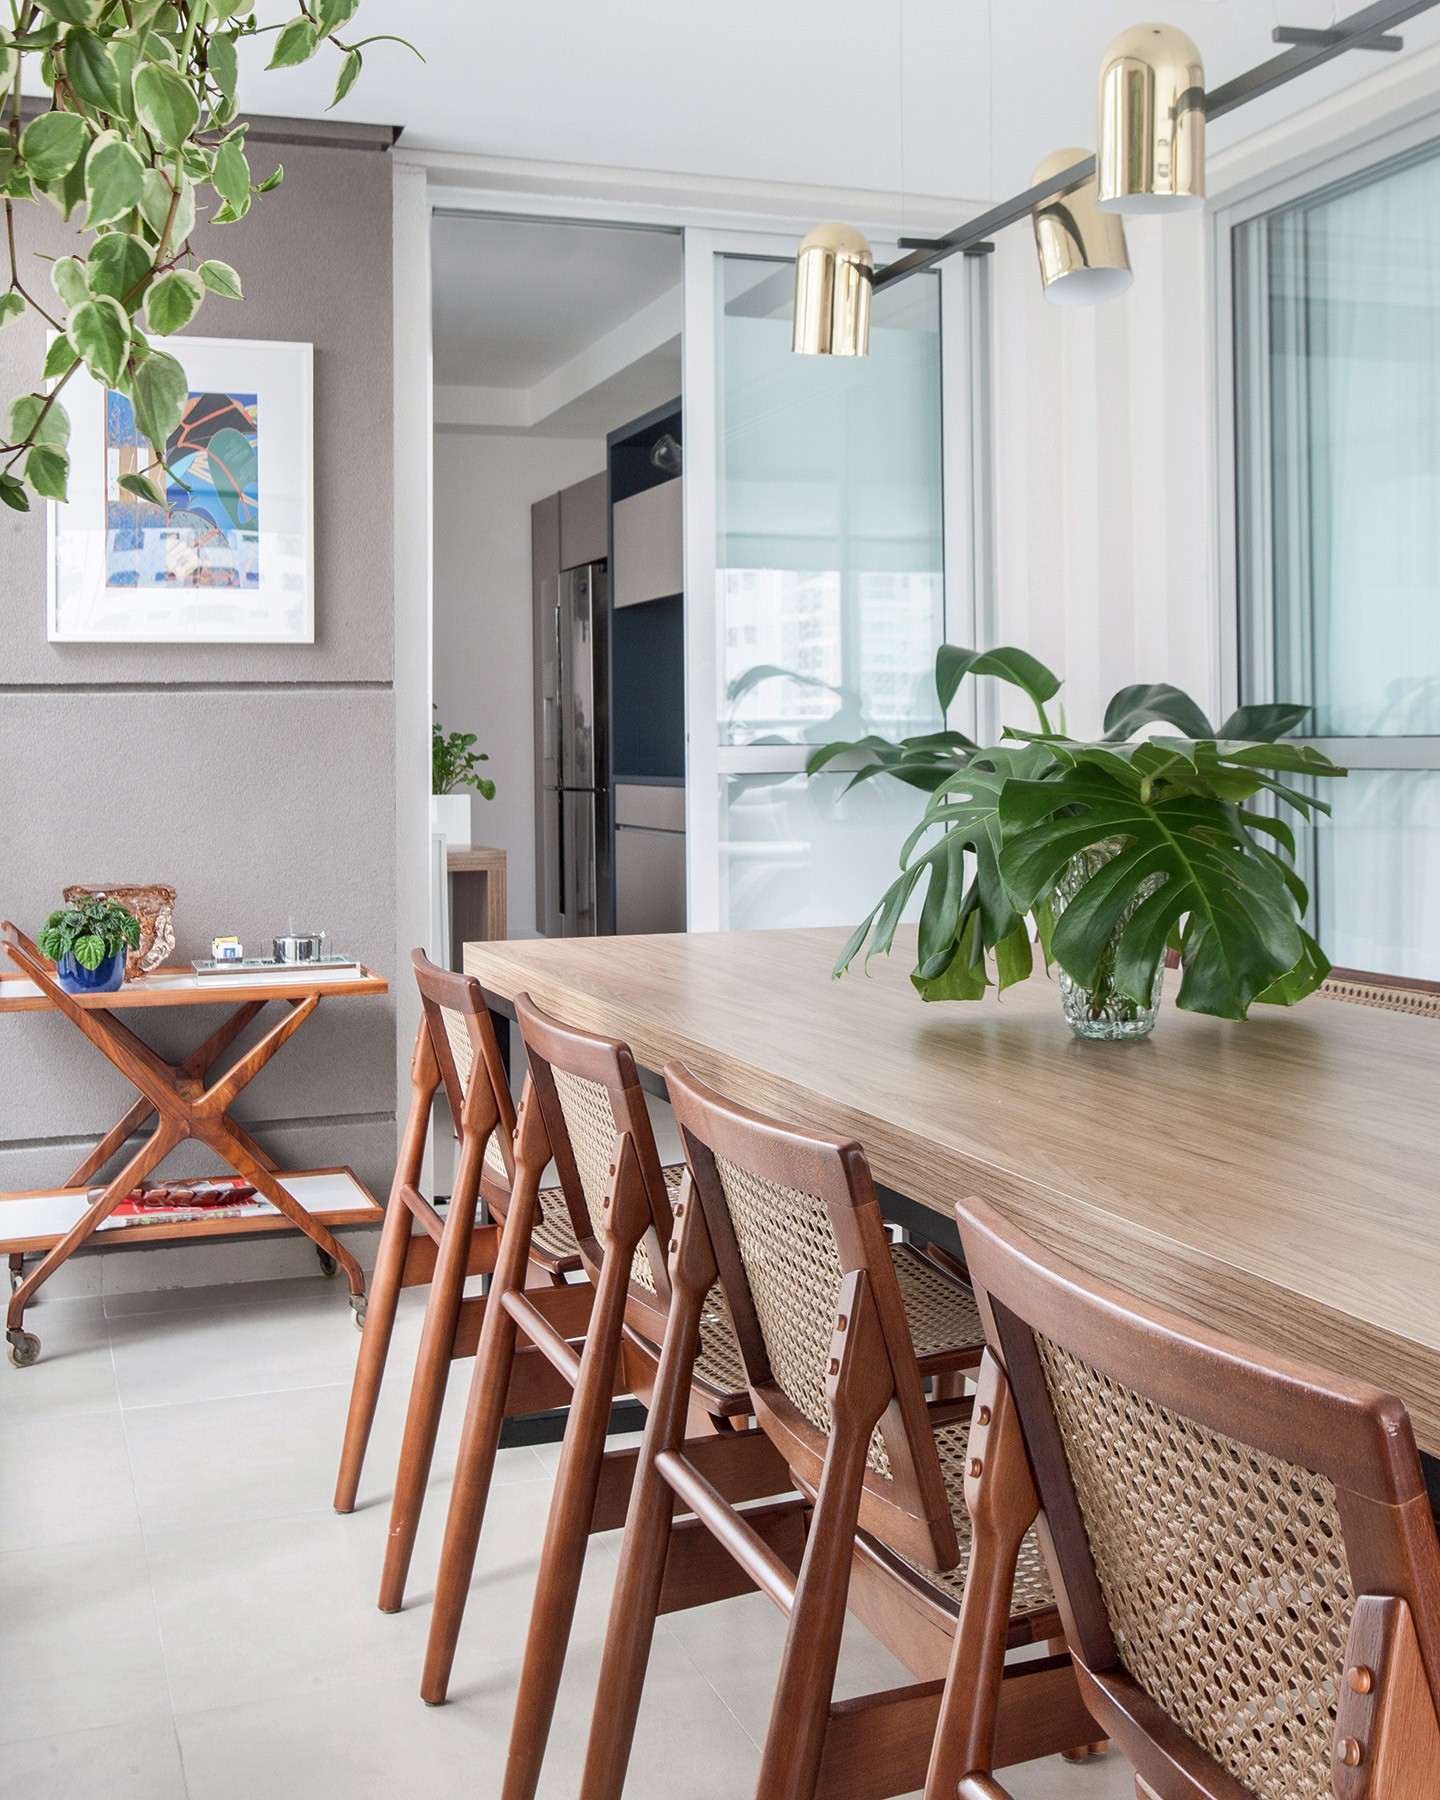 Apartamento de 220 m² ganha décor leve e móveis com linhas retas (Foto: Eder Bruscagin/divulgação)